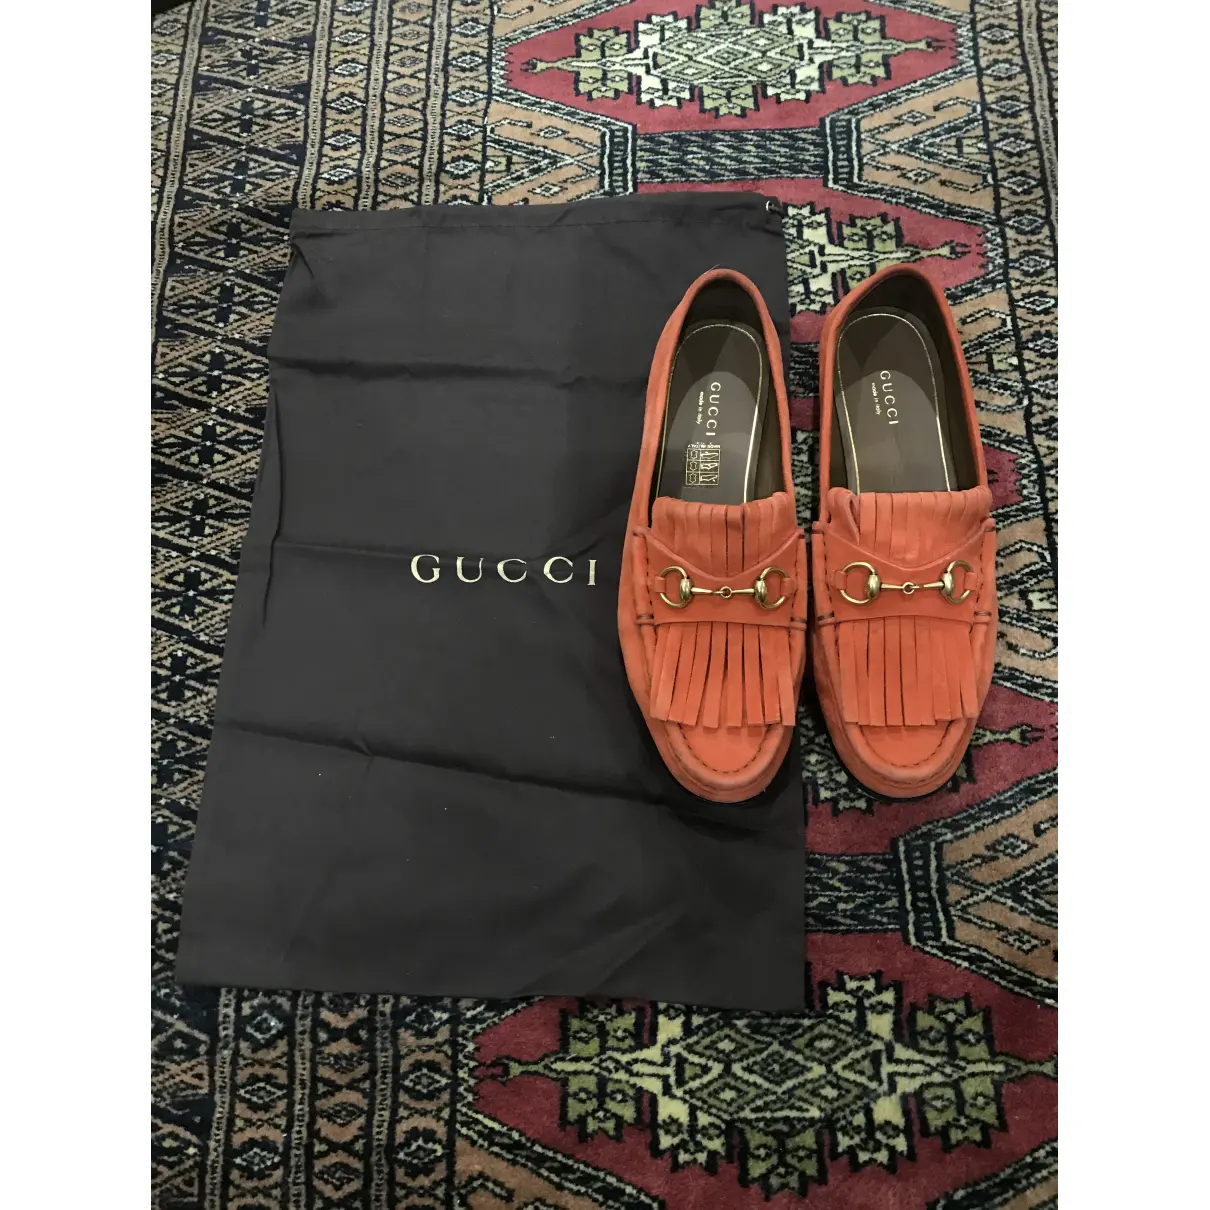 Buy Gucci Flats online